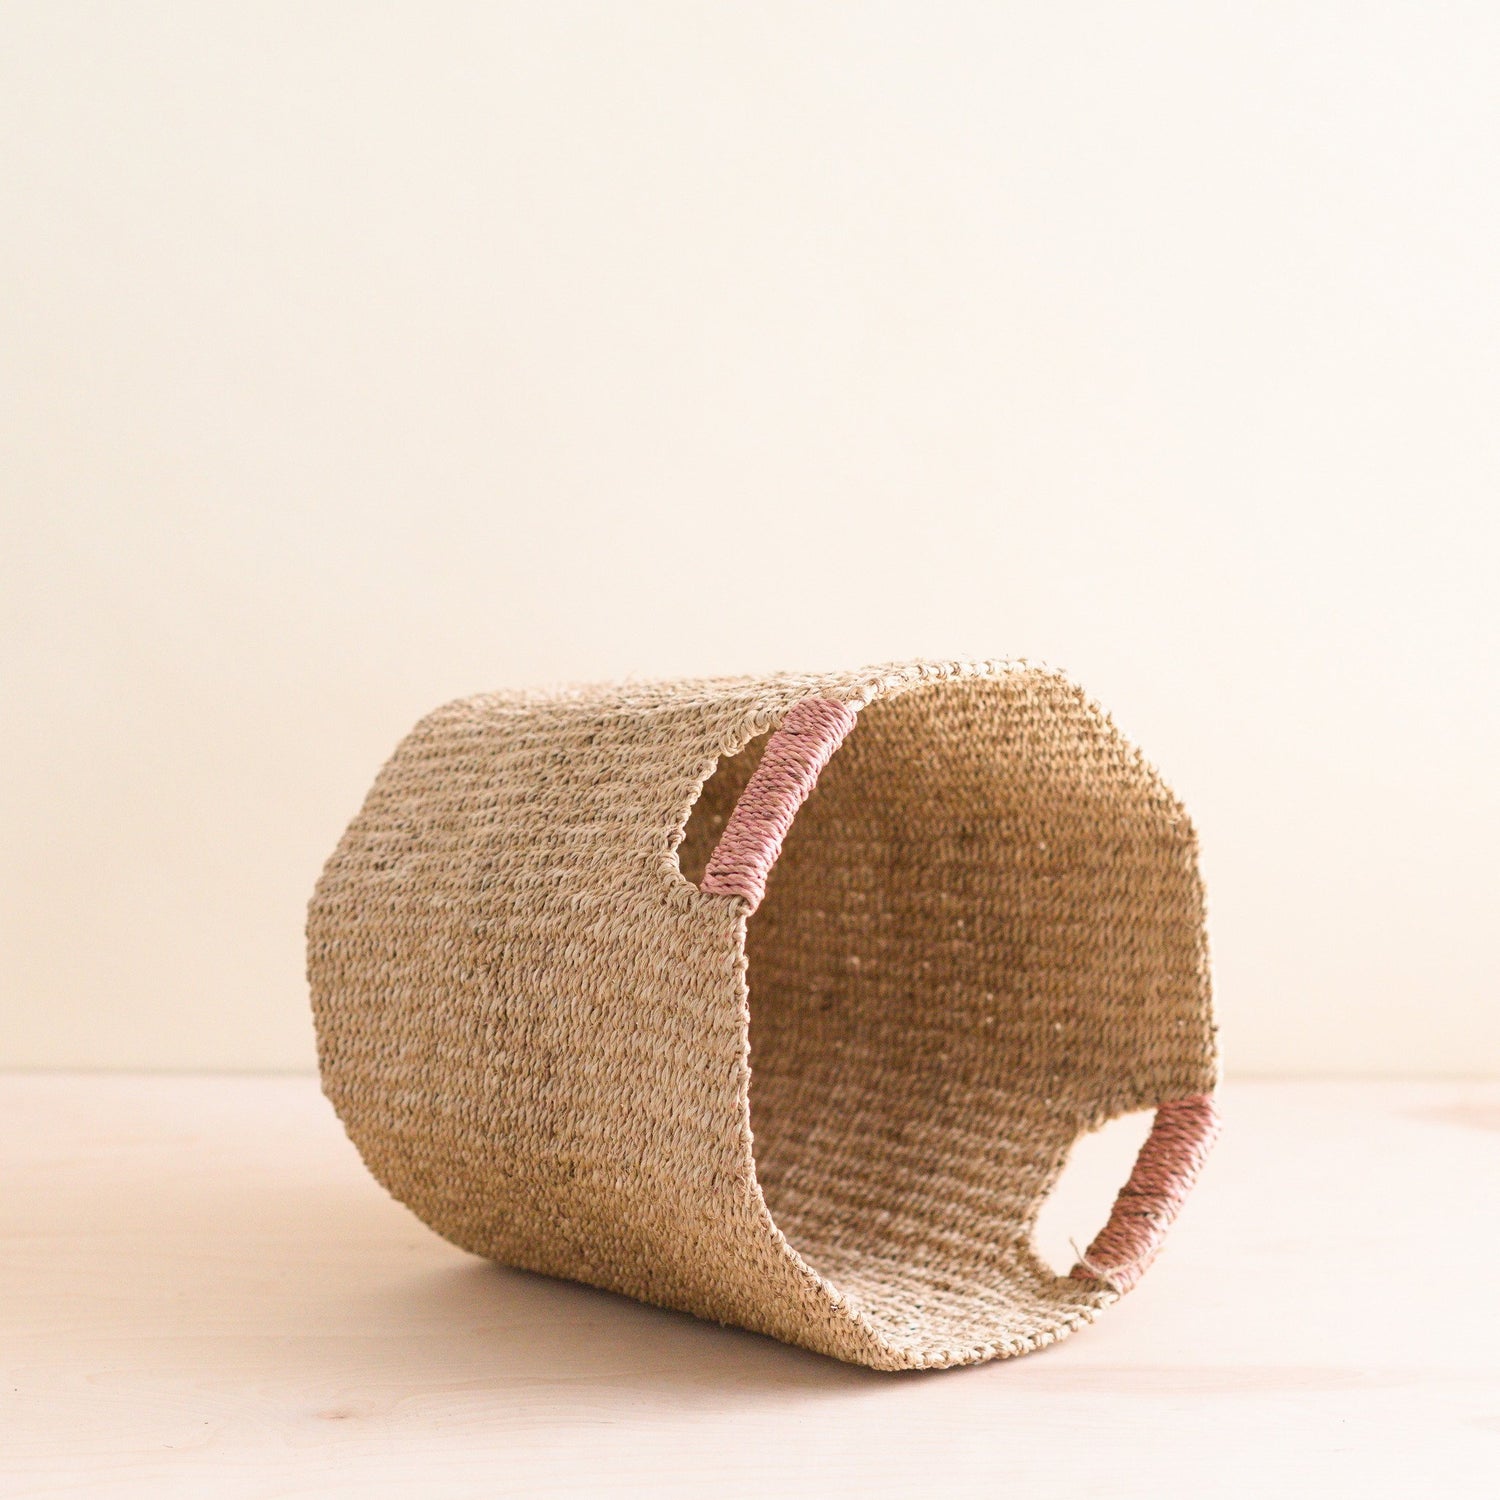 Baskets - Natural Octagon Basket with Dusty Rose Handle - Natural Basket | LIKHÂ - LIKHÂ